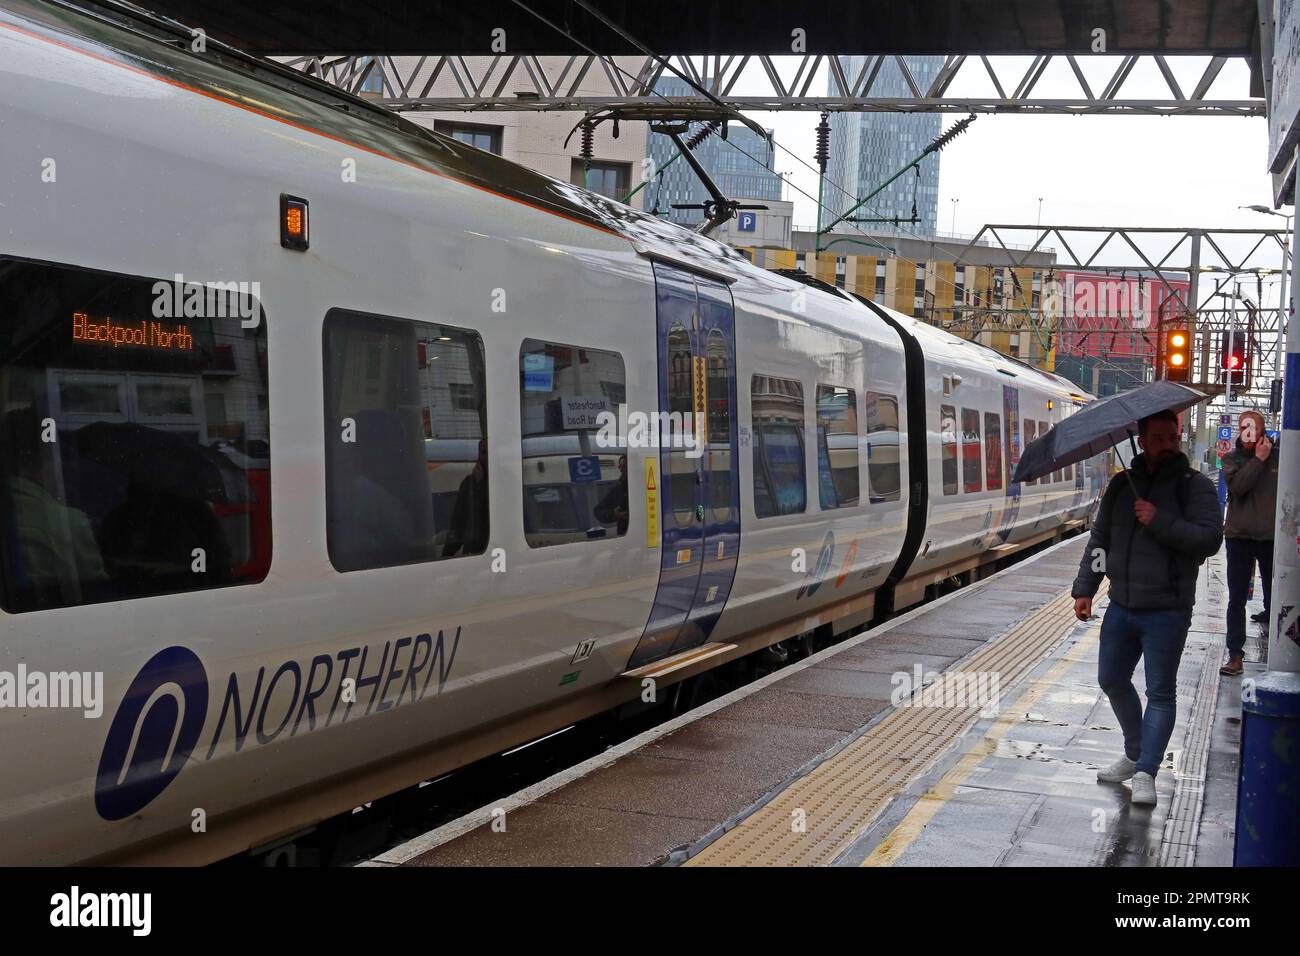 Servizio ferroviario Northern, EMU - unità elettrica multipla, su una piattaforma piovosa, alla stazione ferroviaria Manchester Oxford Road, Inghilterra, Regno Unito, M1 6FU Foto Stock